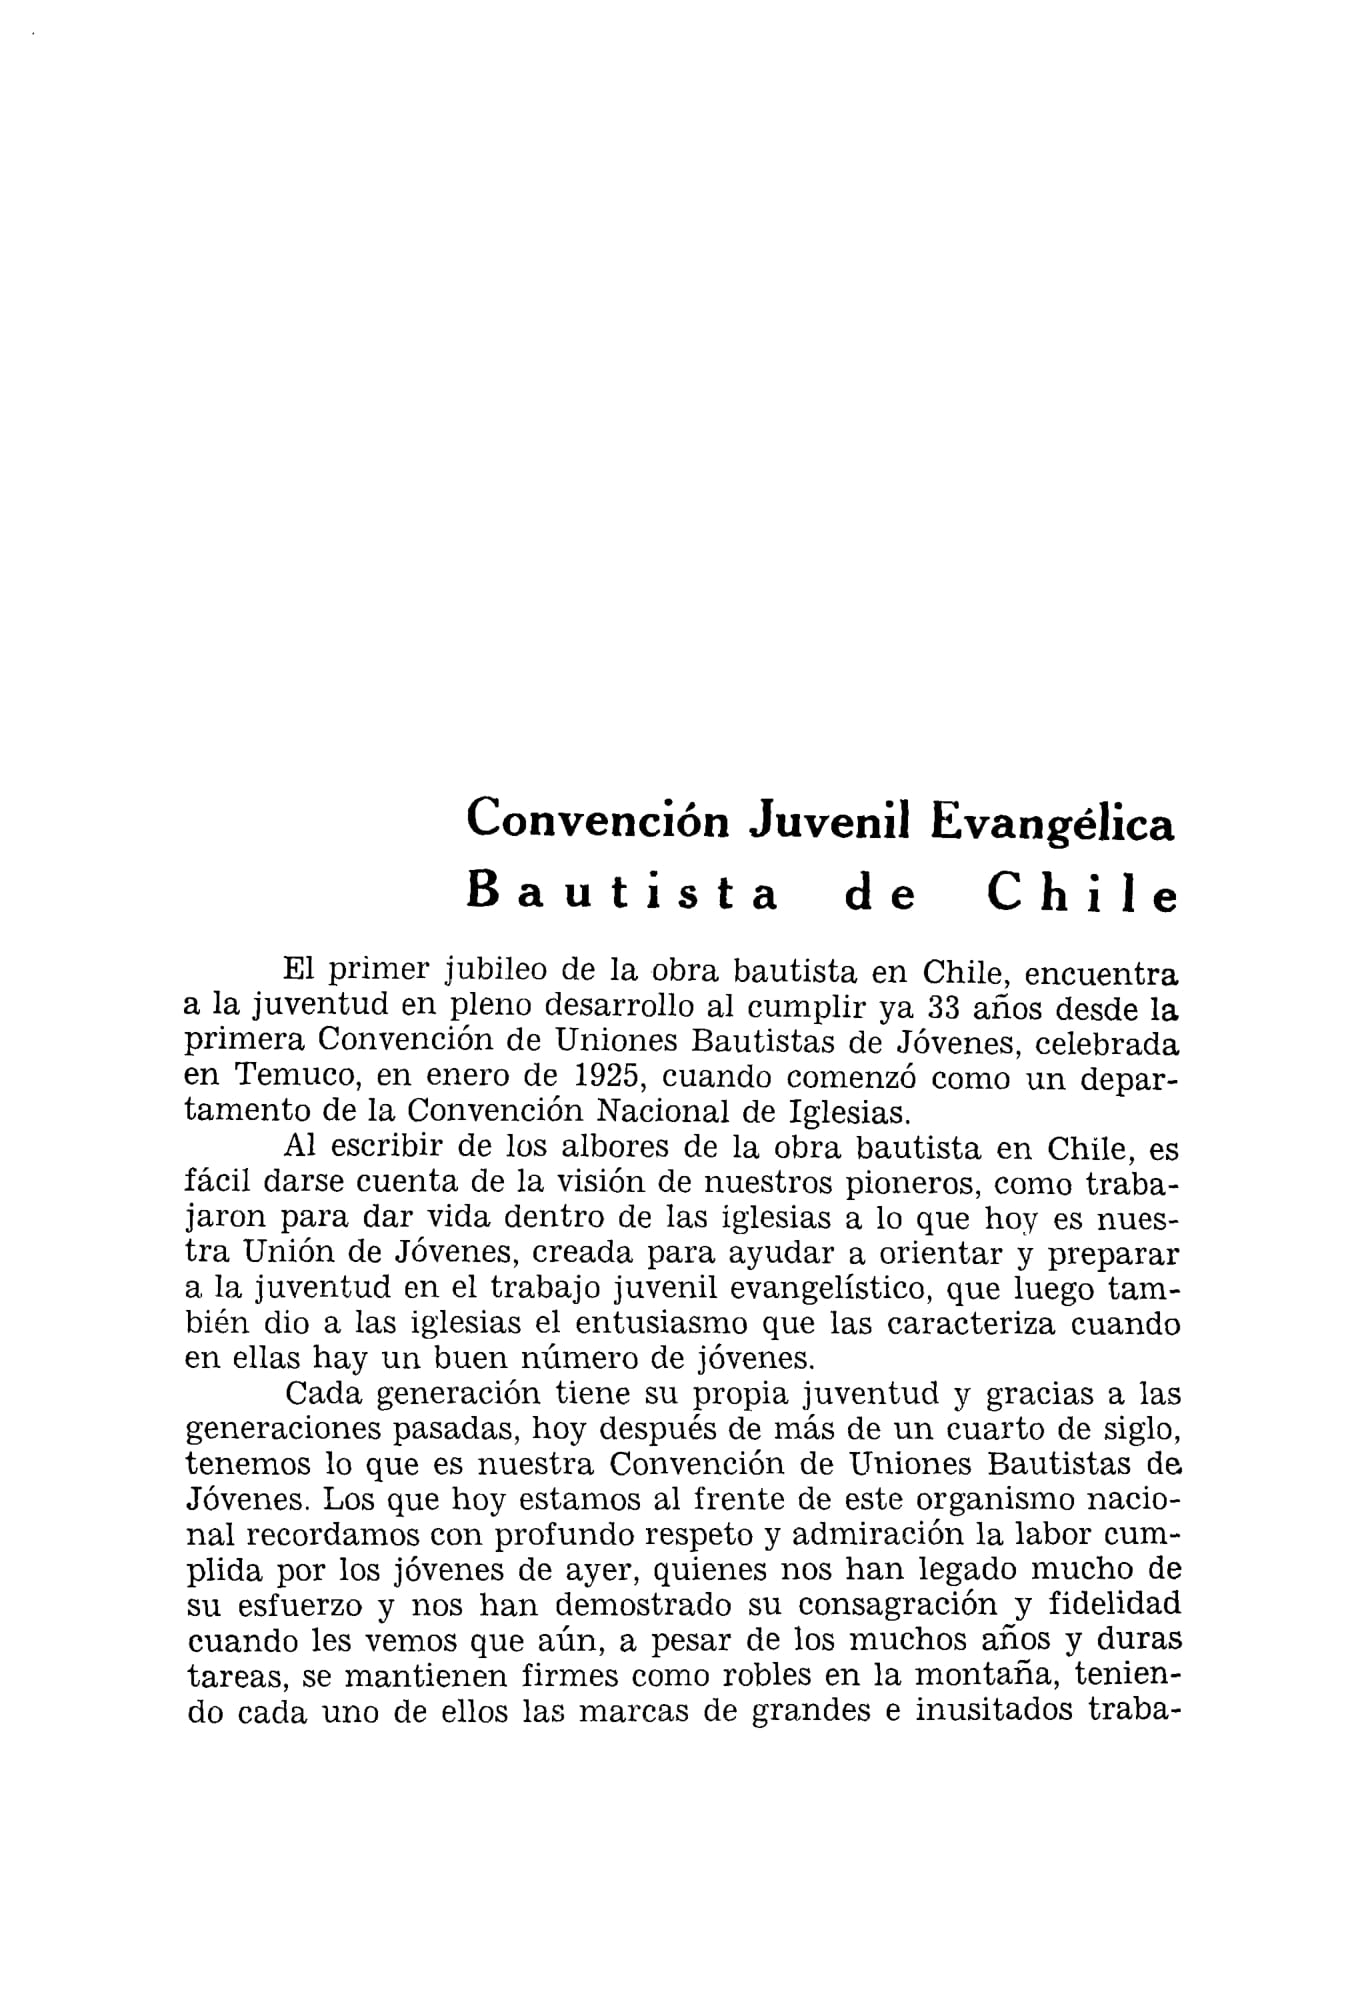 Convención de Chile aniversario 50 1908-1958-35.jpg